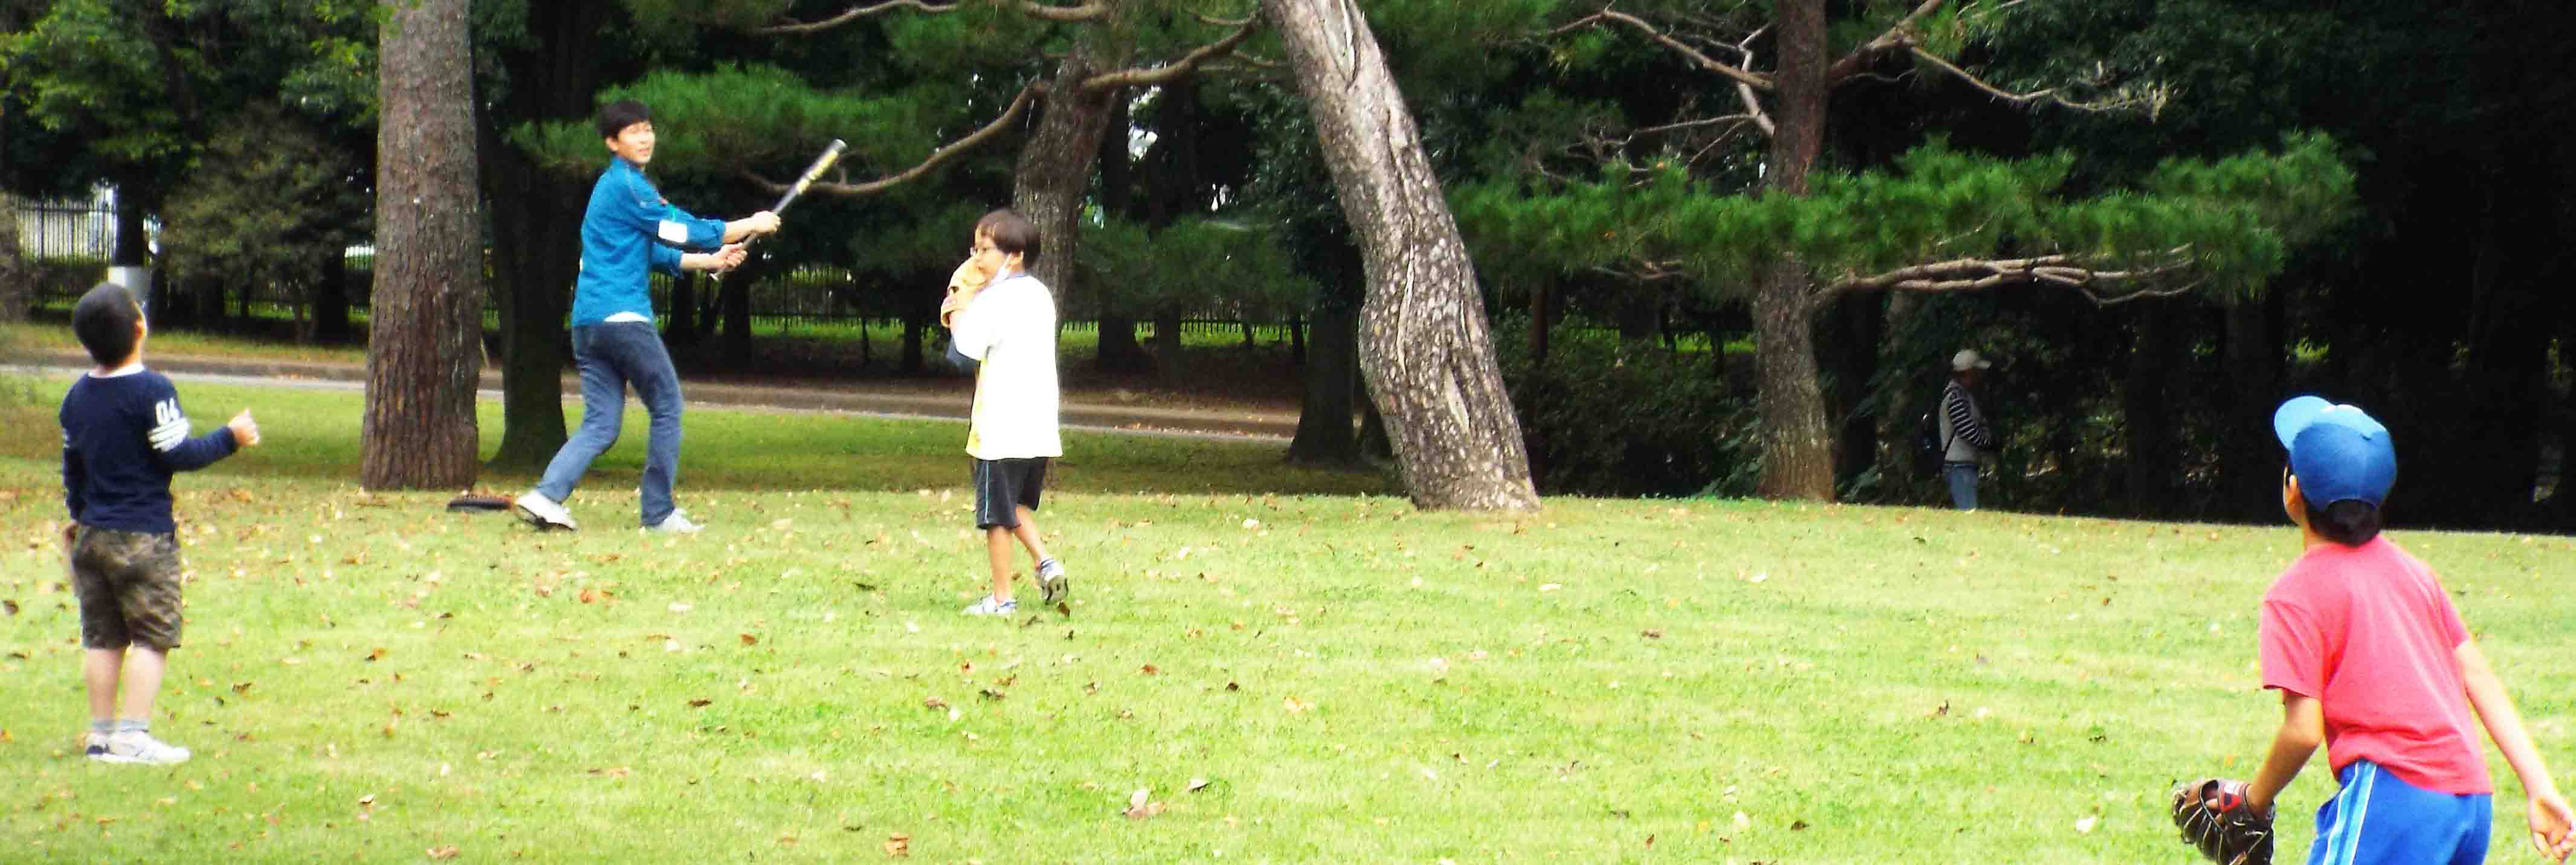 木々に囲まれた国立女性教育会館の緑の芝生の上で、子どもたちが野球を楽しんでいる写真